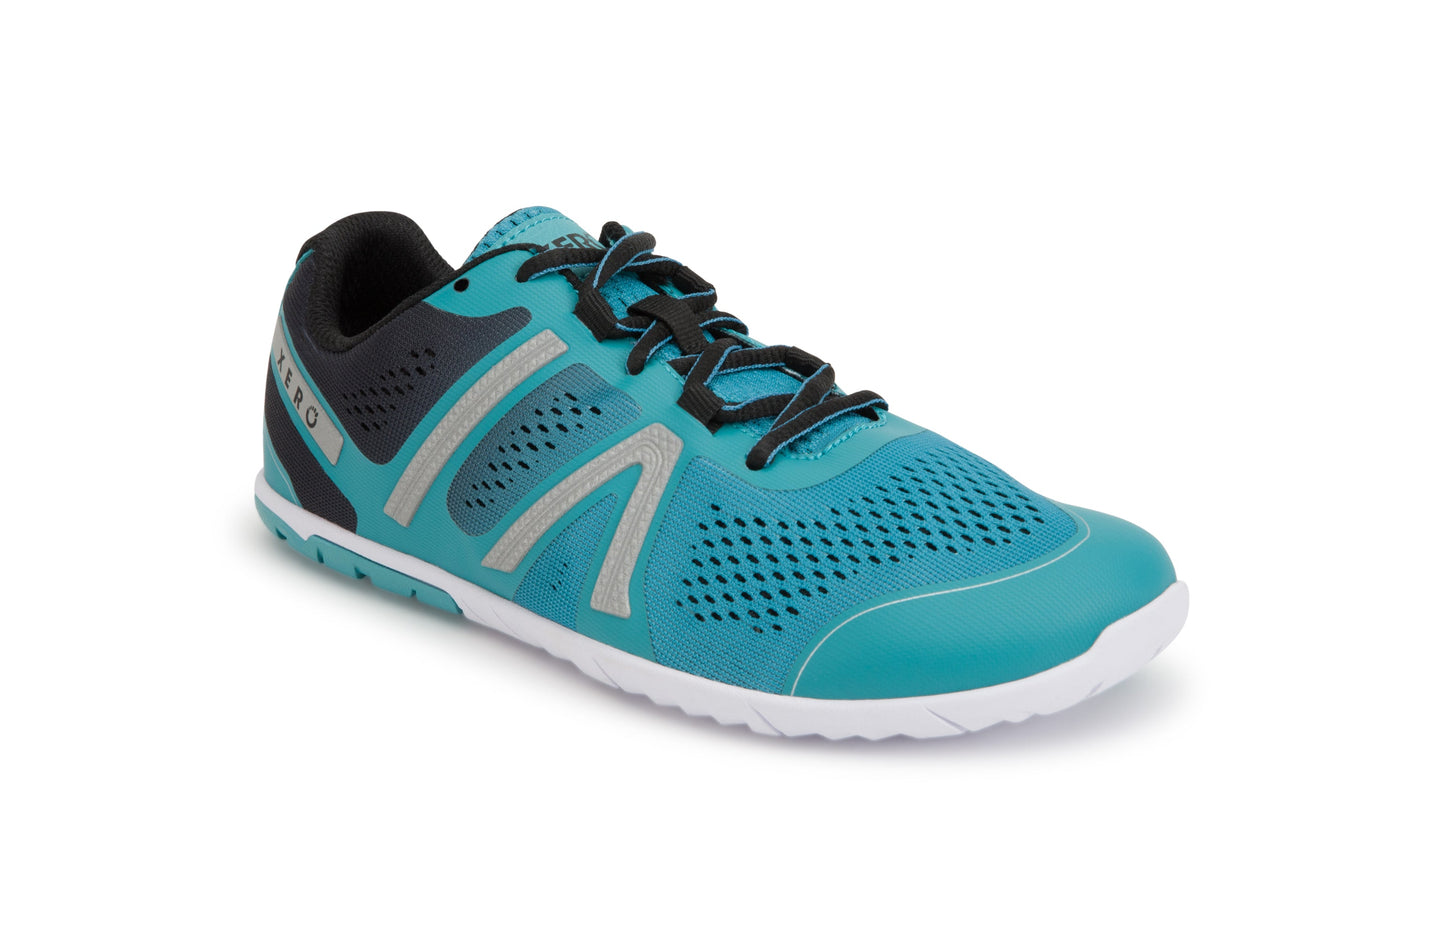 Xero Shoes HFS Womens barfods træningssko/løbesko til kvinder i farven porcelain blue, vinklet